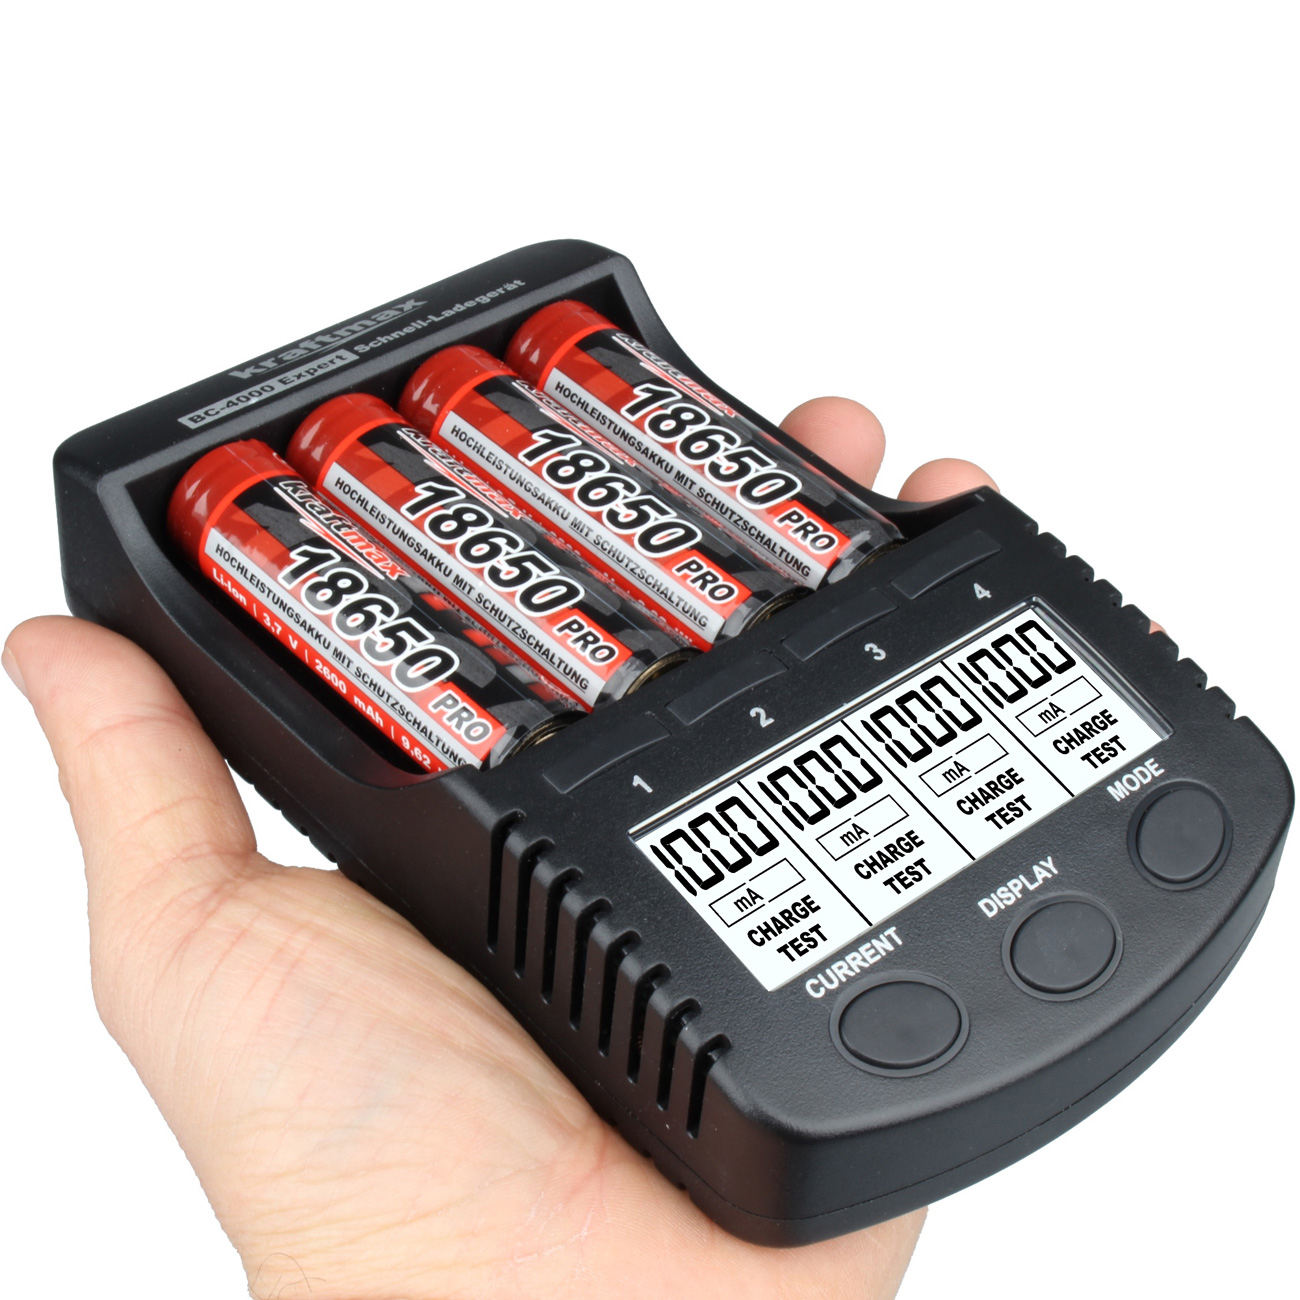 Autobatterie Ladegerät - Übersicht, Erfahrungen, Anleitungen